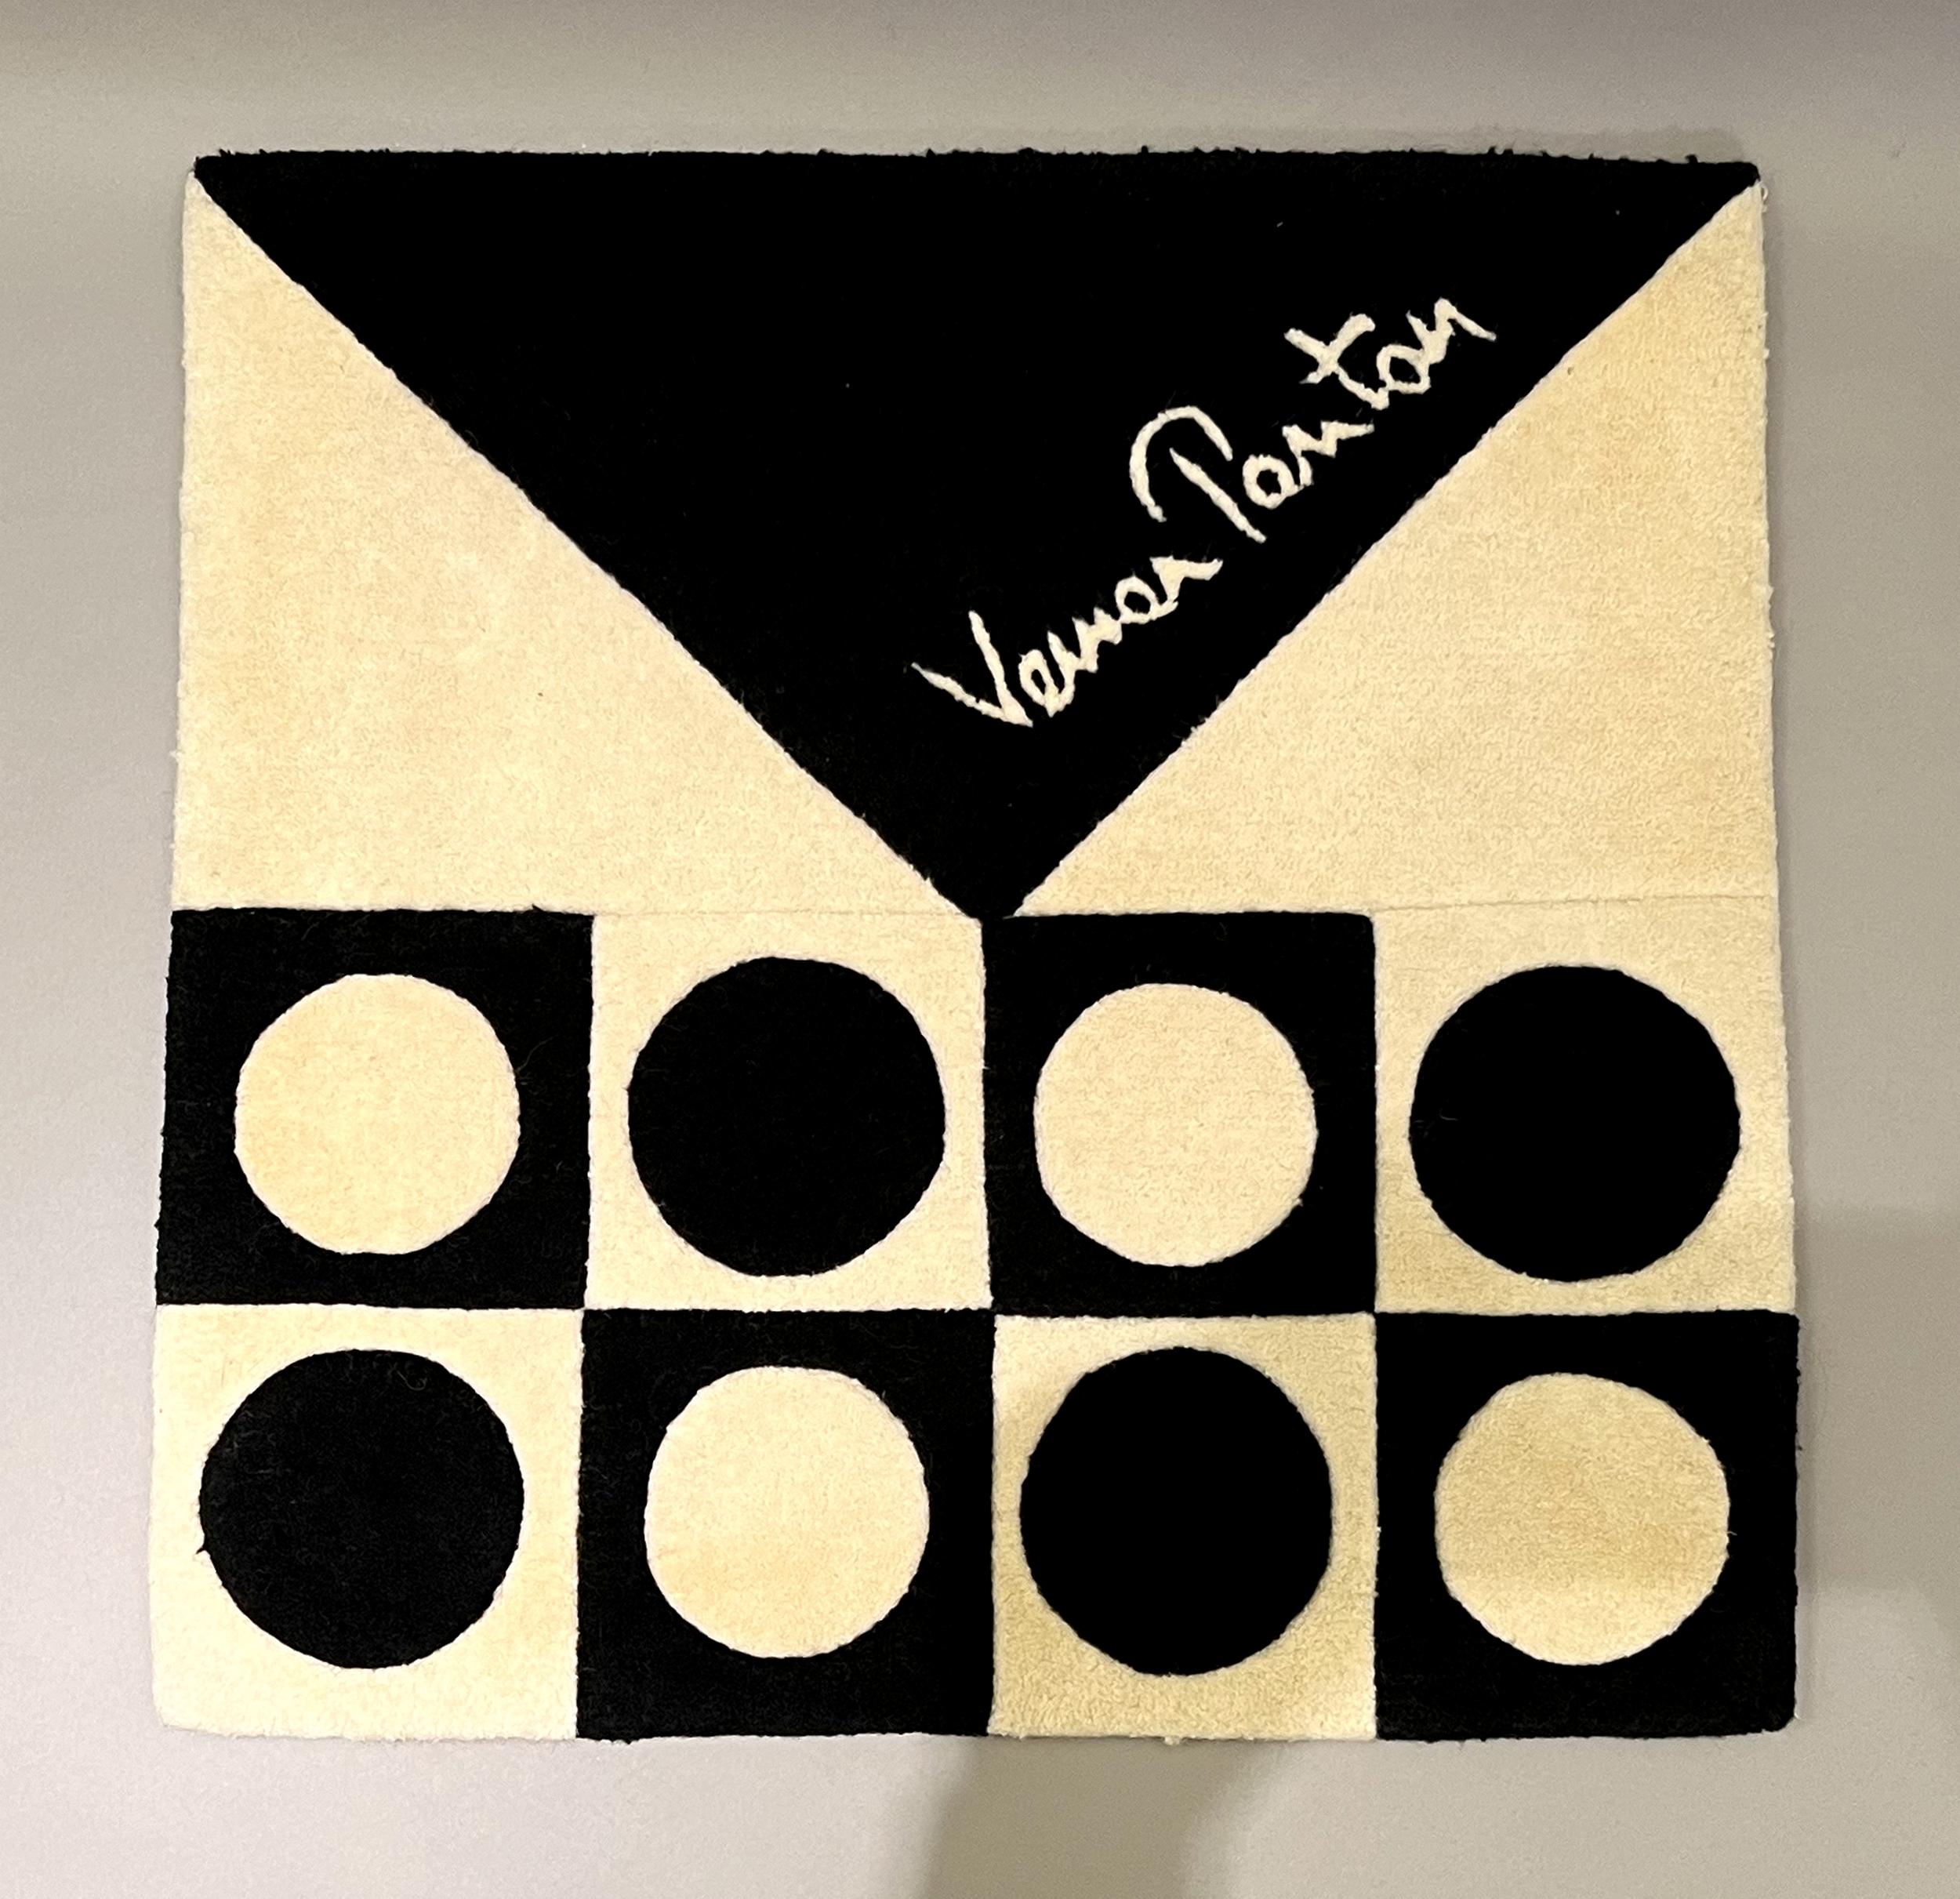 Zwei kleine Musterteppiche, entworfen von Verner Panton und herausgegeben von Verner Panton Design in Basel, Schweiz.
Reine Schurwolle.